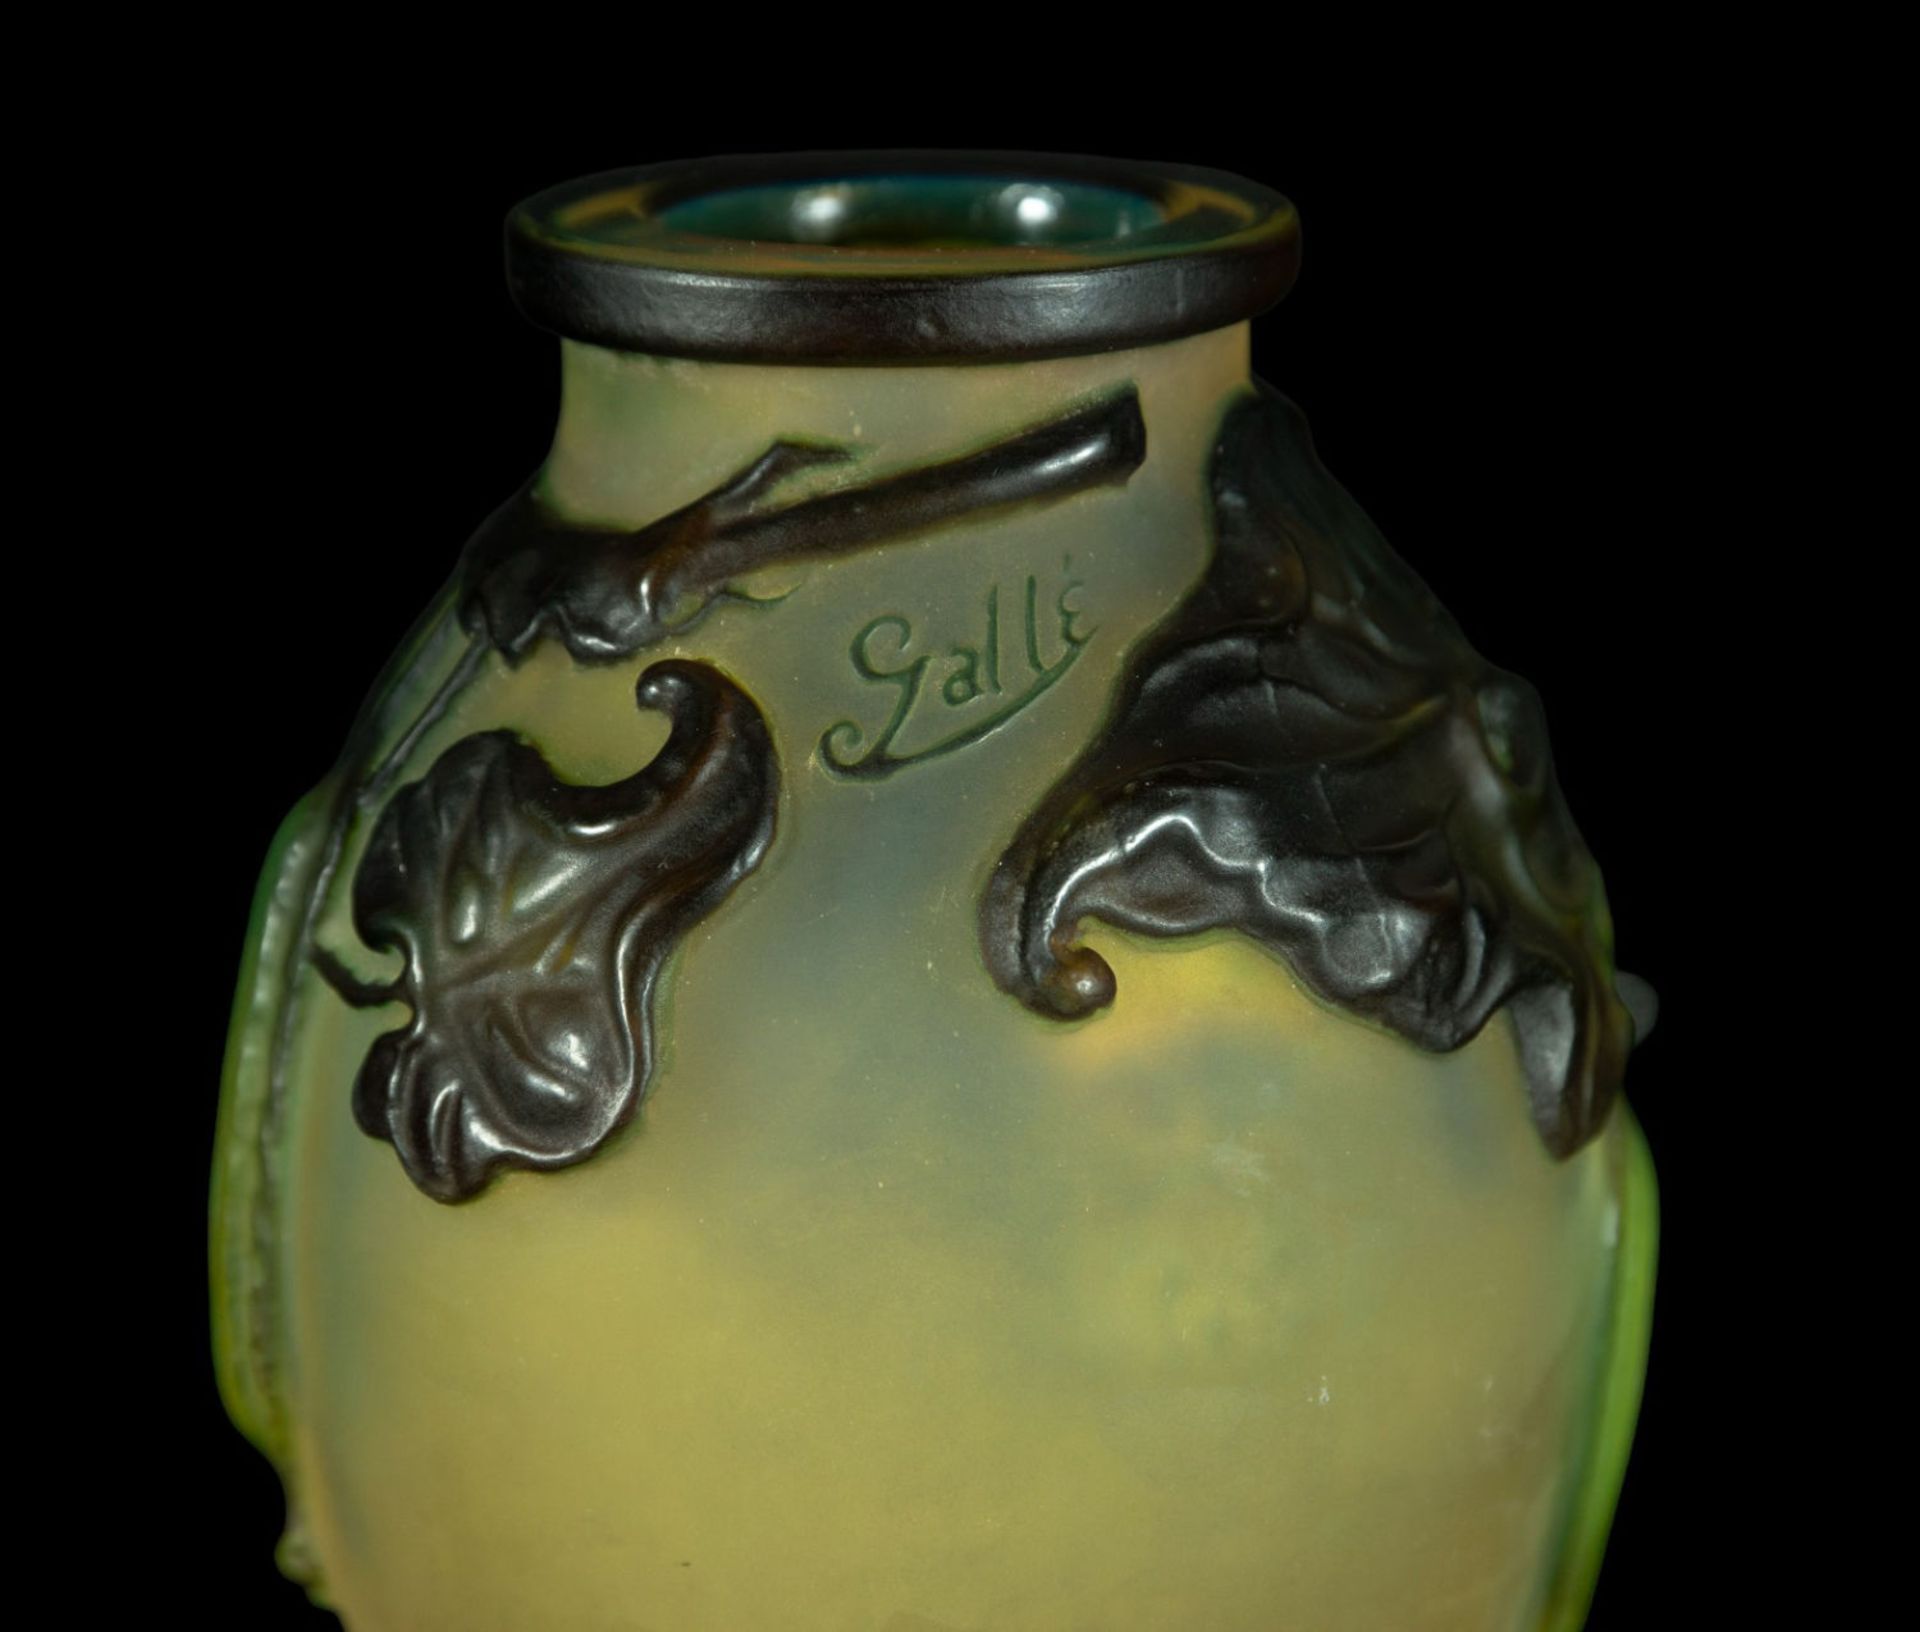 Exquisite Art Nouveau Gallé vase in blown glass and polychrome vitreous paste, 1900s - 1920s - Bild 4 aus 5